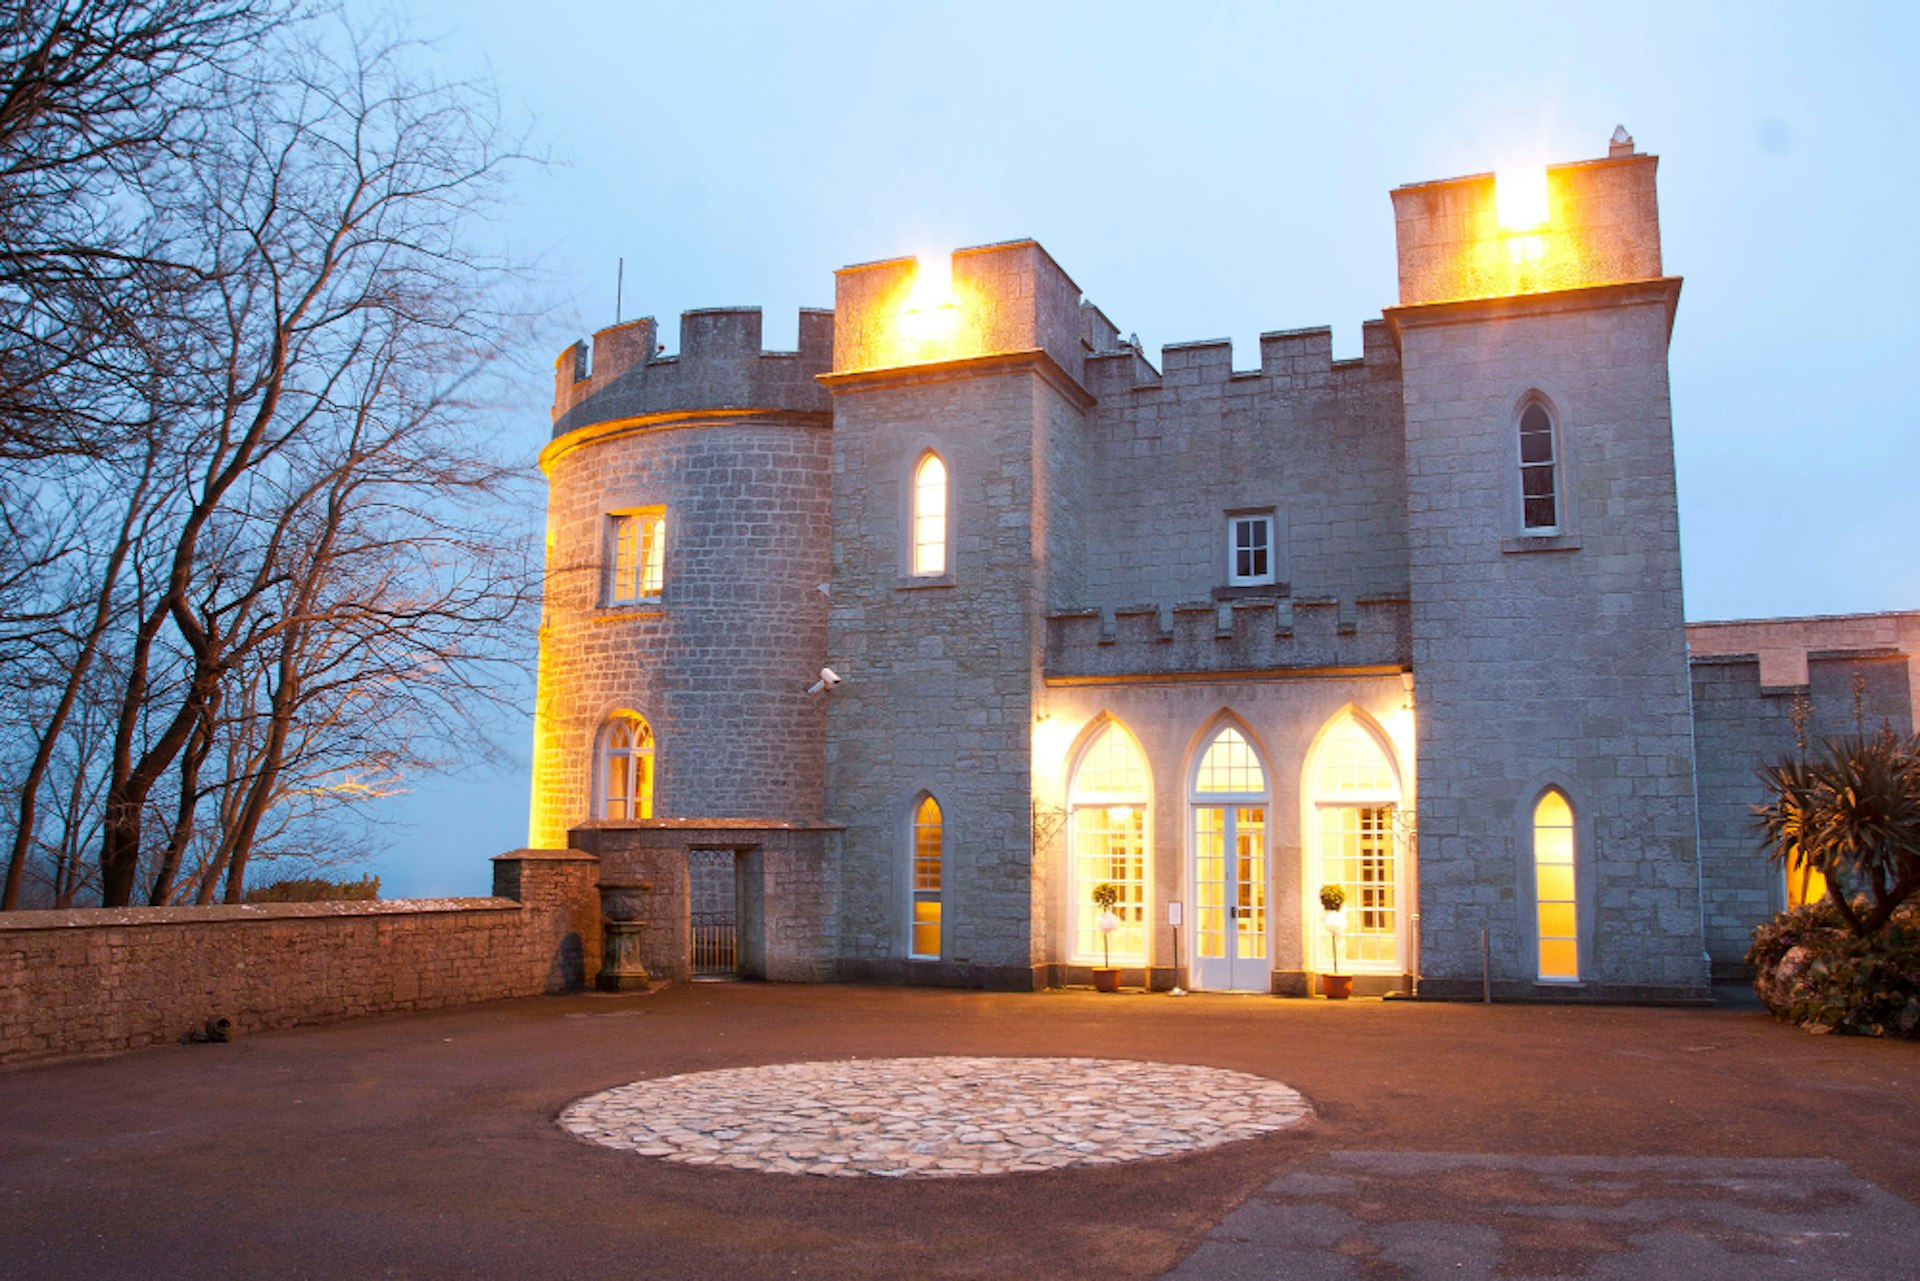 An illuminated Wyatt Castle in Dorset